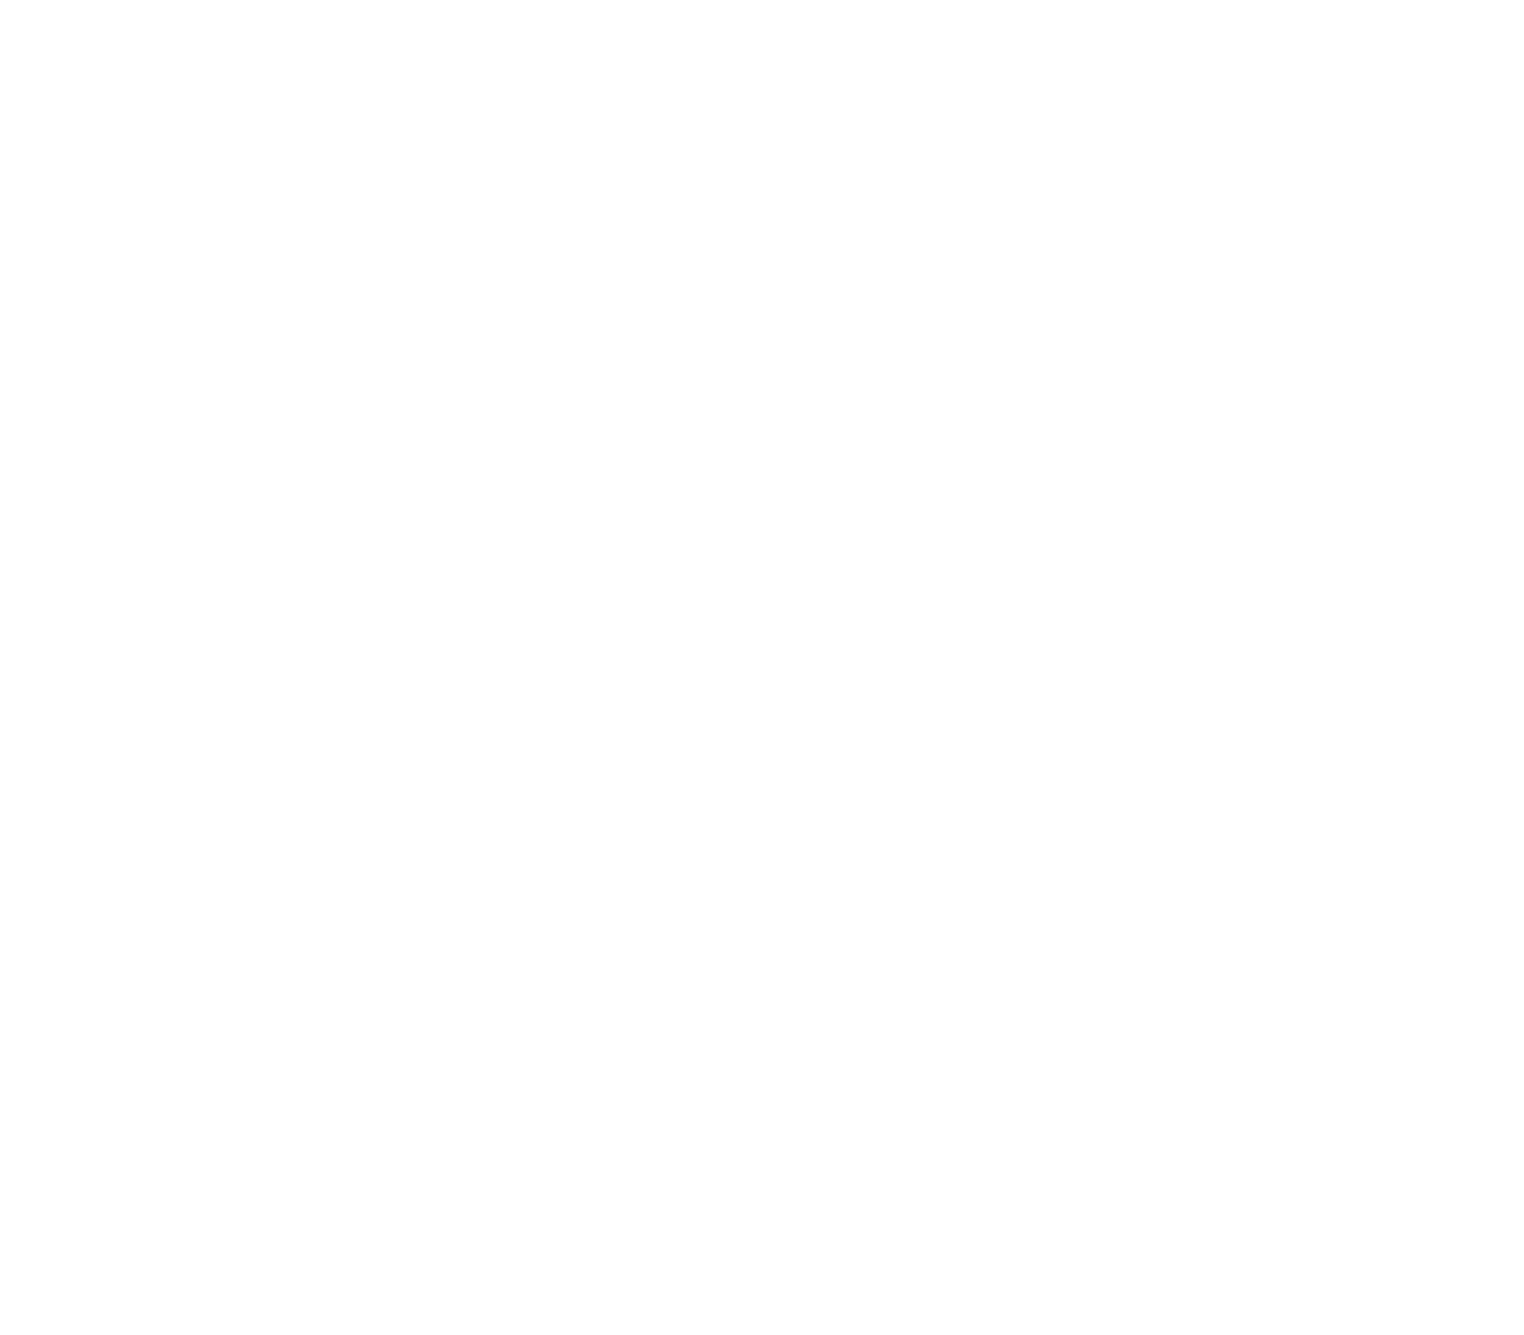 Finance House logo grand pour les fonds sombres (PNG transparent)